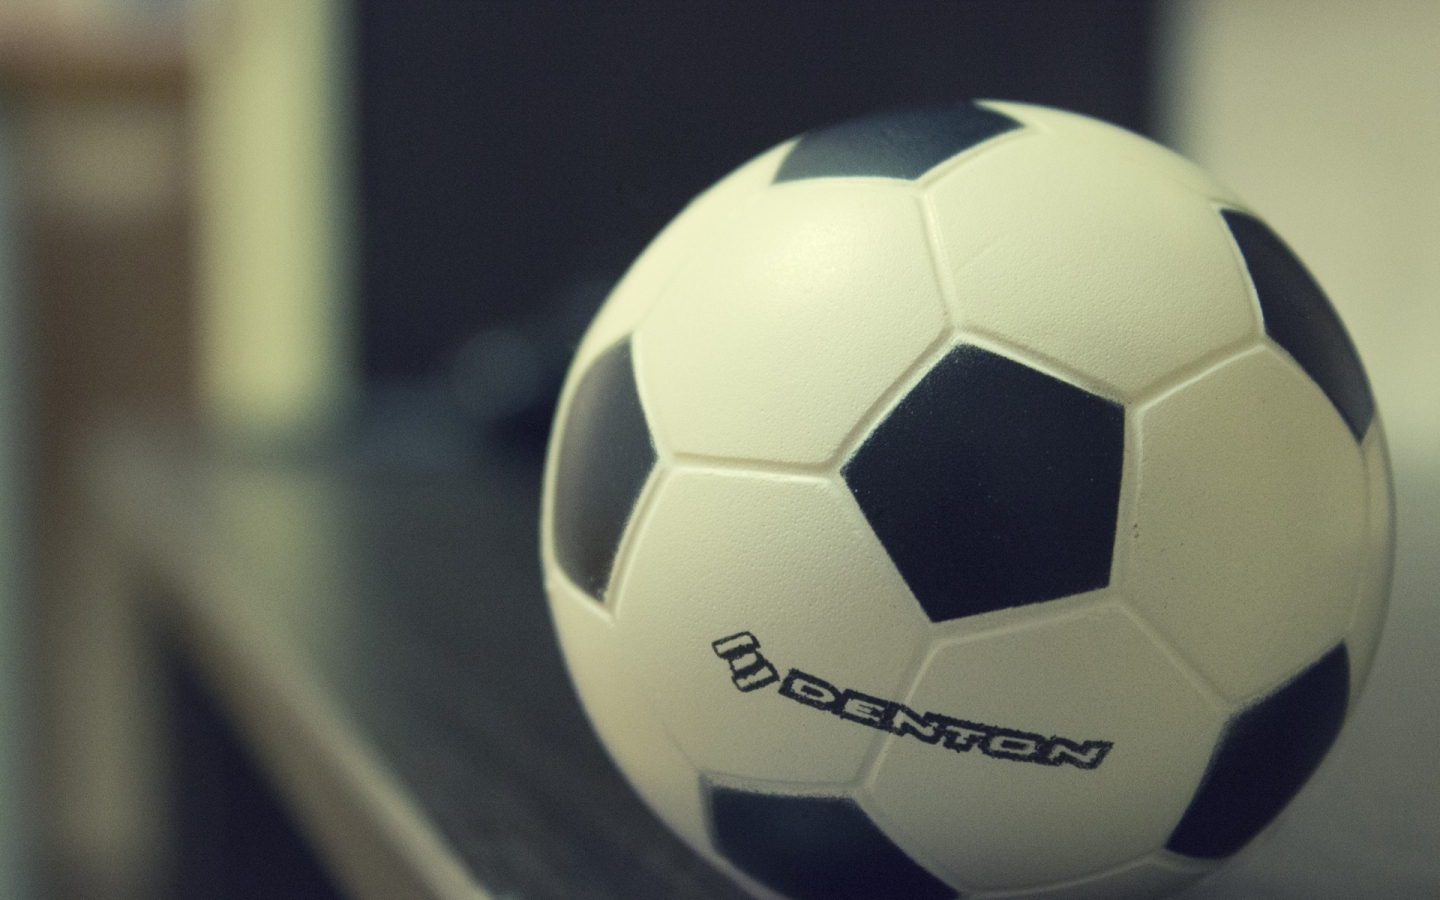 Denton Soccer Ball for 1440 x 900 widescreen resolution